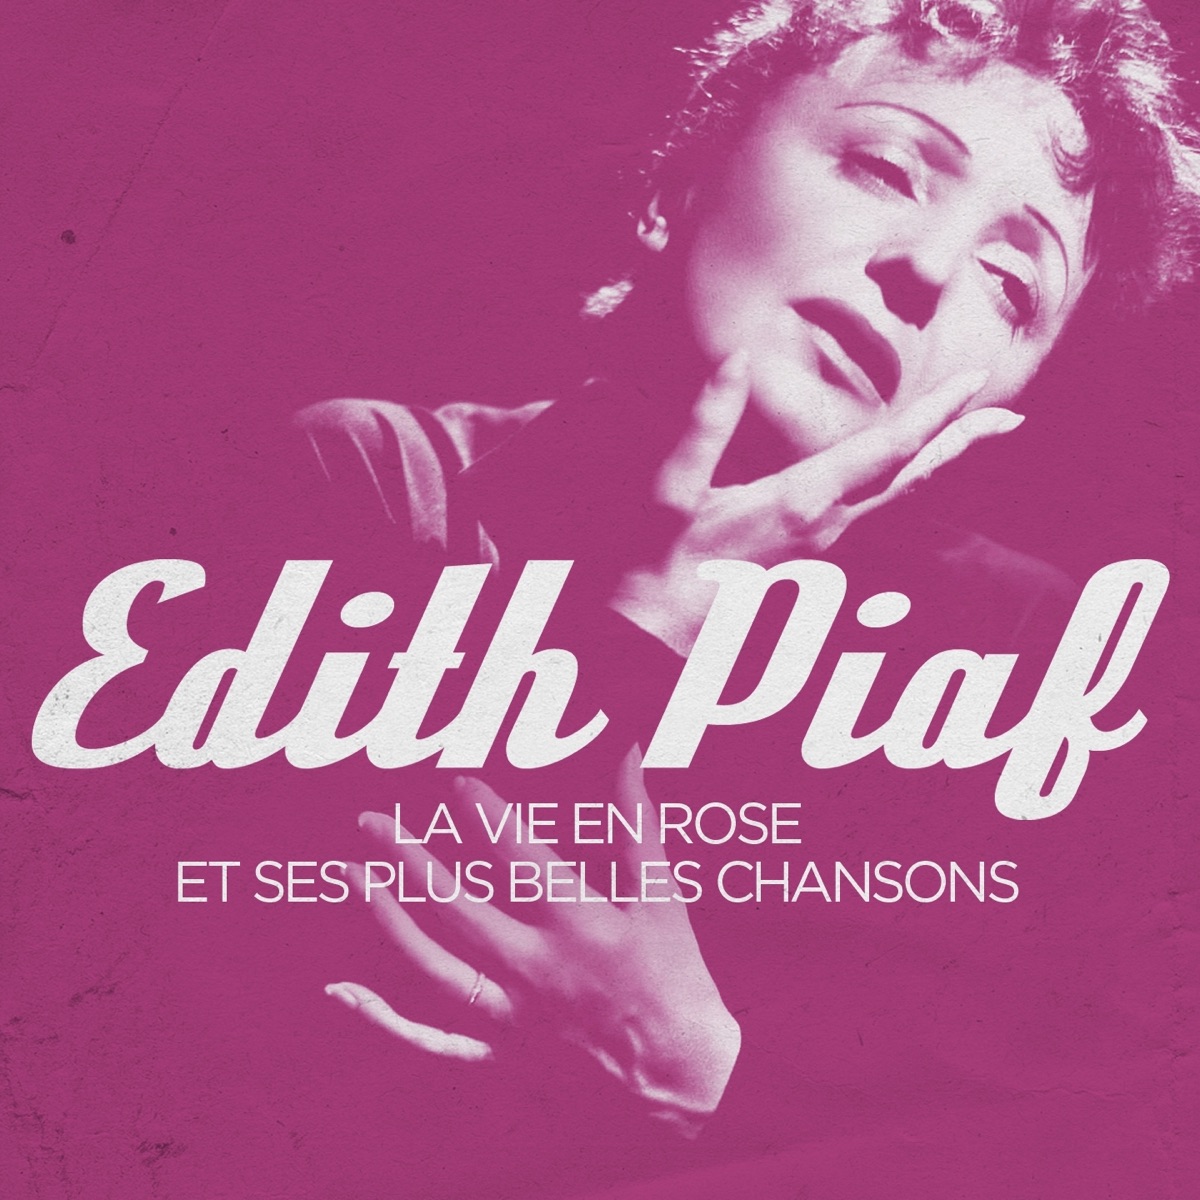 ‎Edith Piaf - La vie en rose et ses plus belles chansons - EP di Édith Piaf  su Apple Music